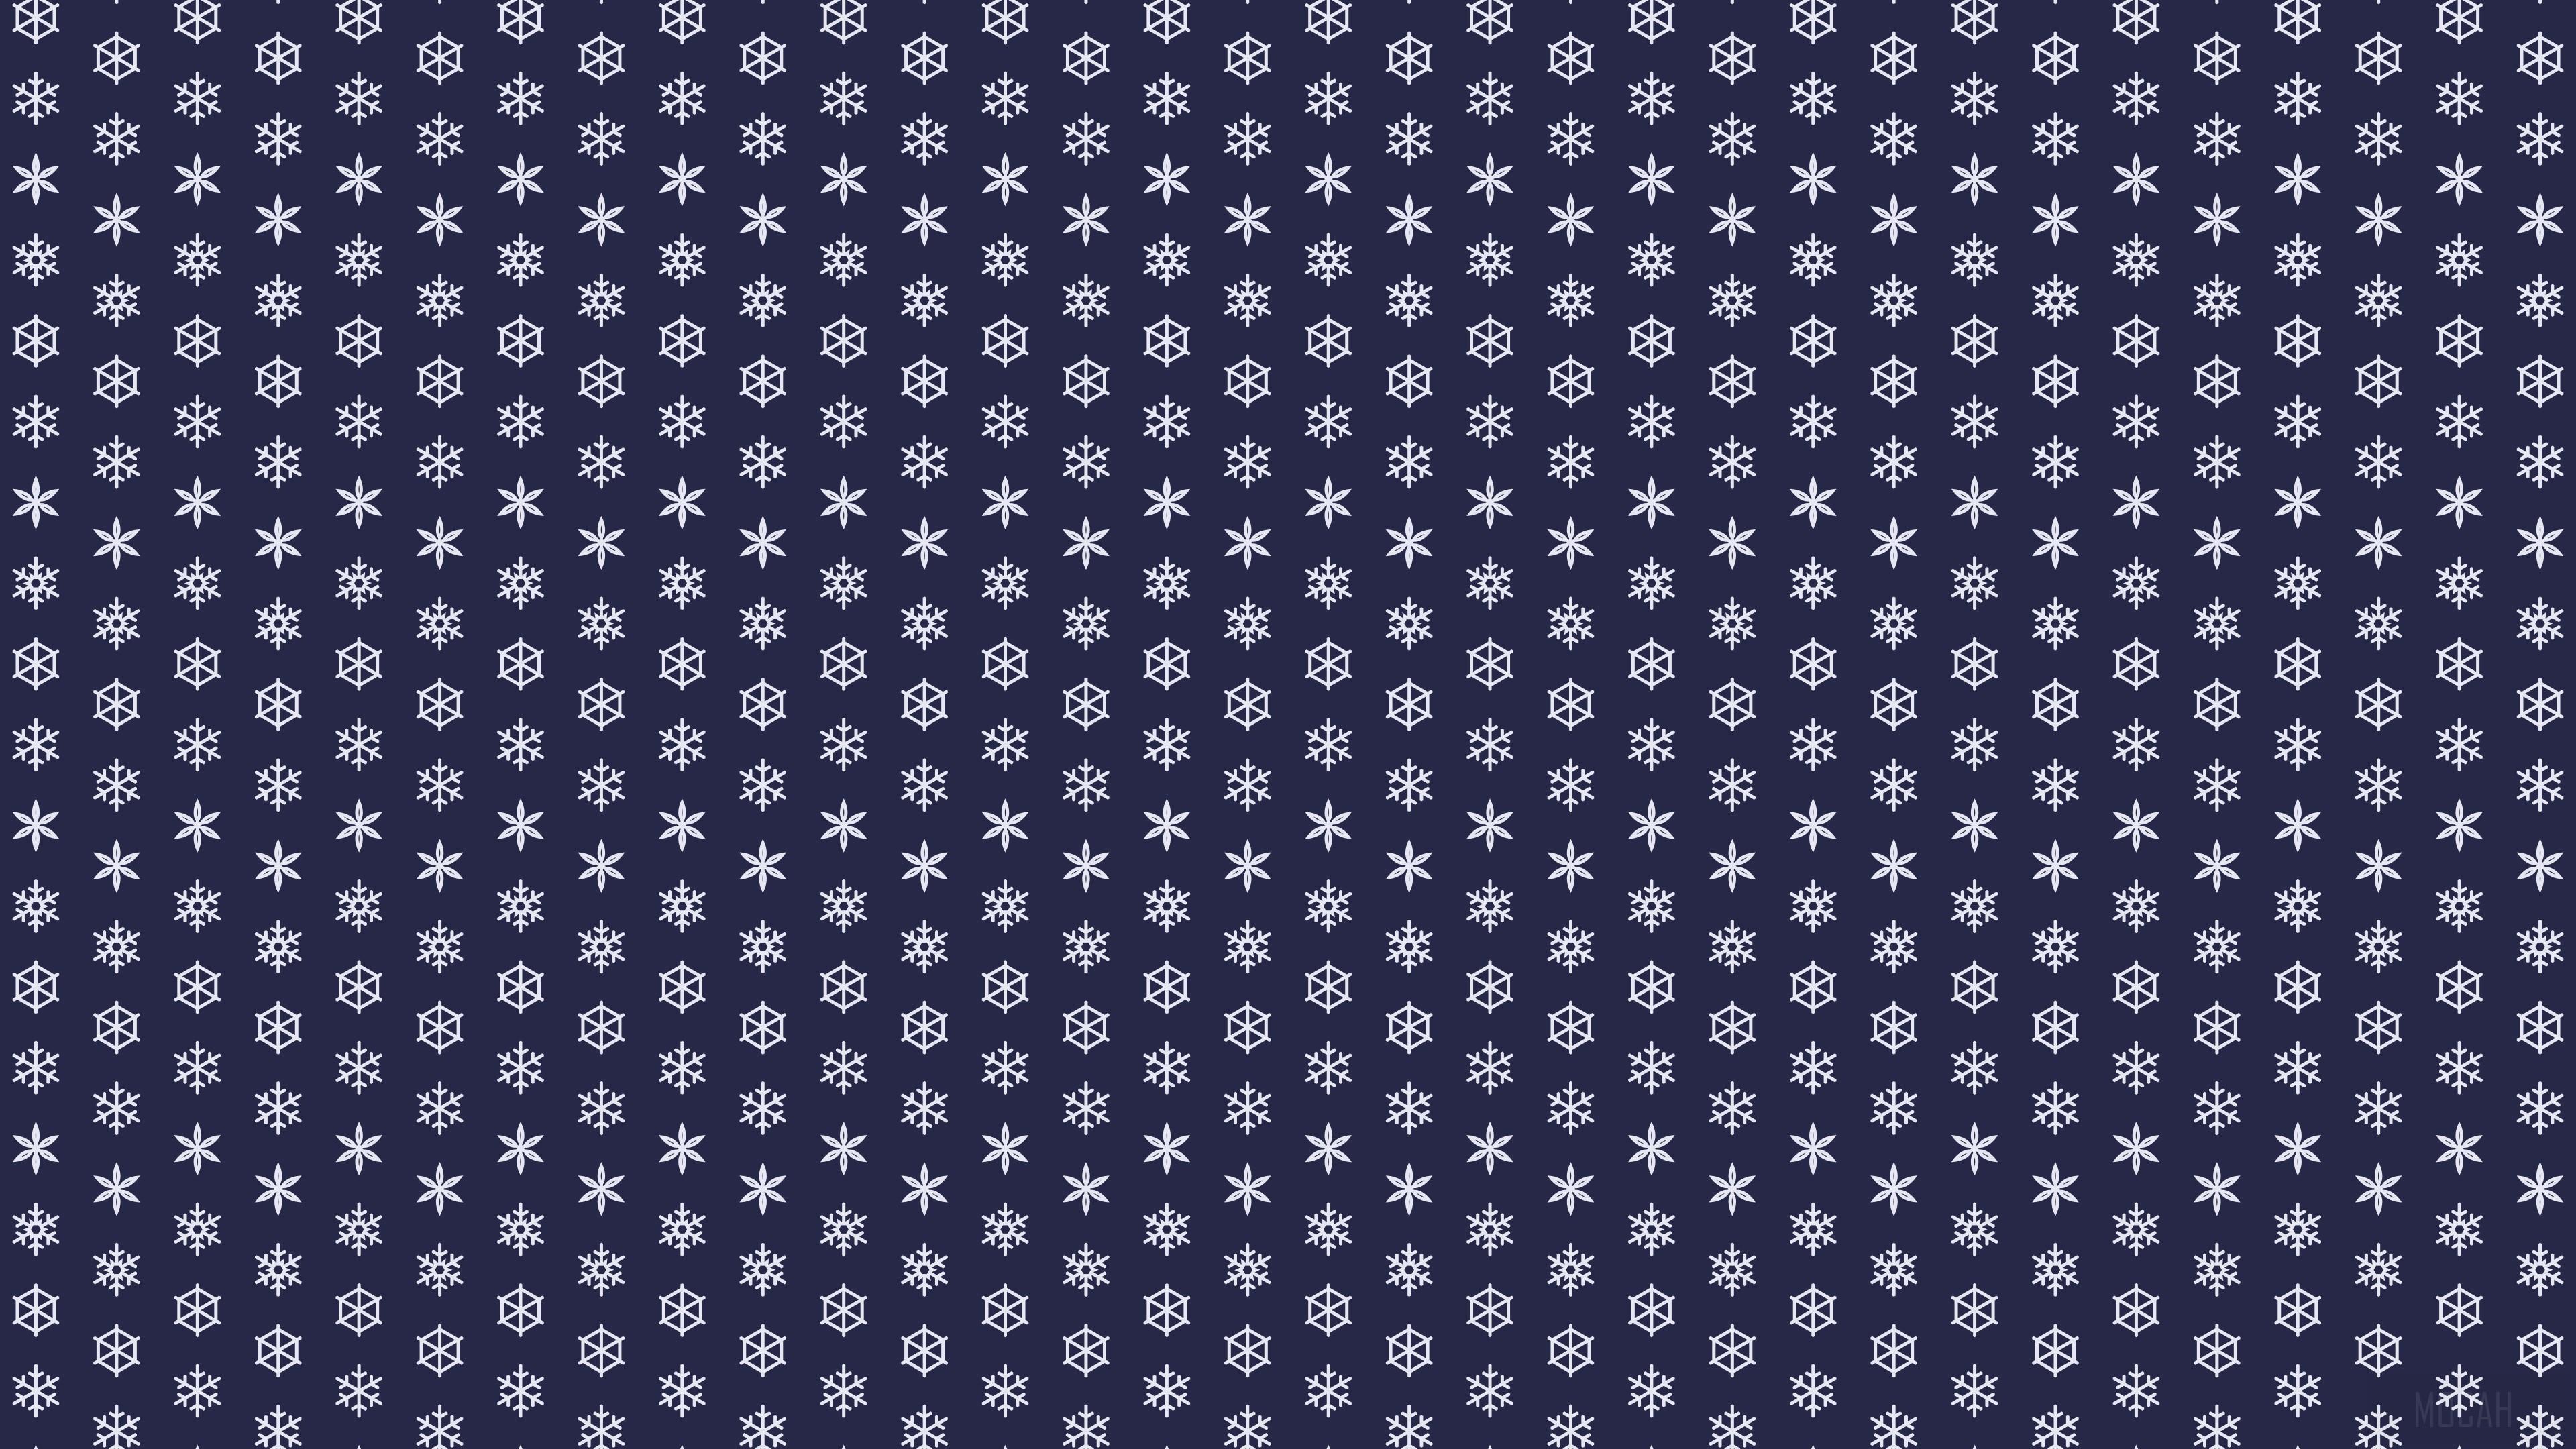 HD wallpaper, Snowflakes Abstract 4K